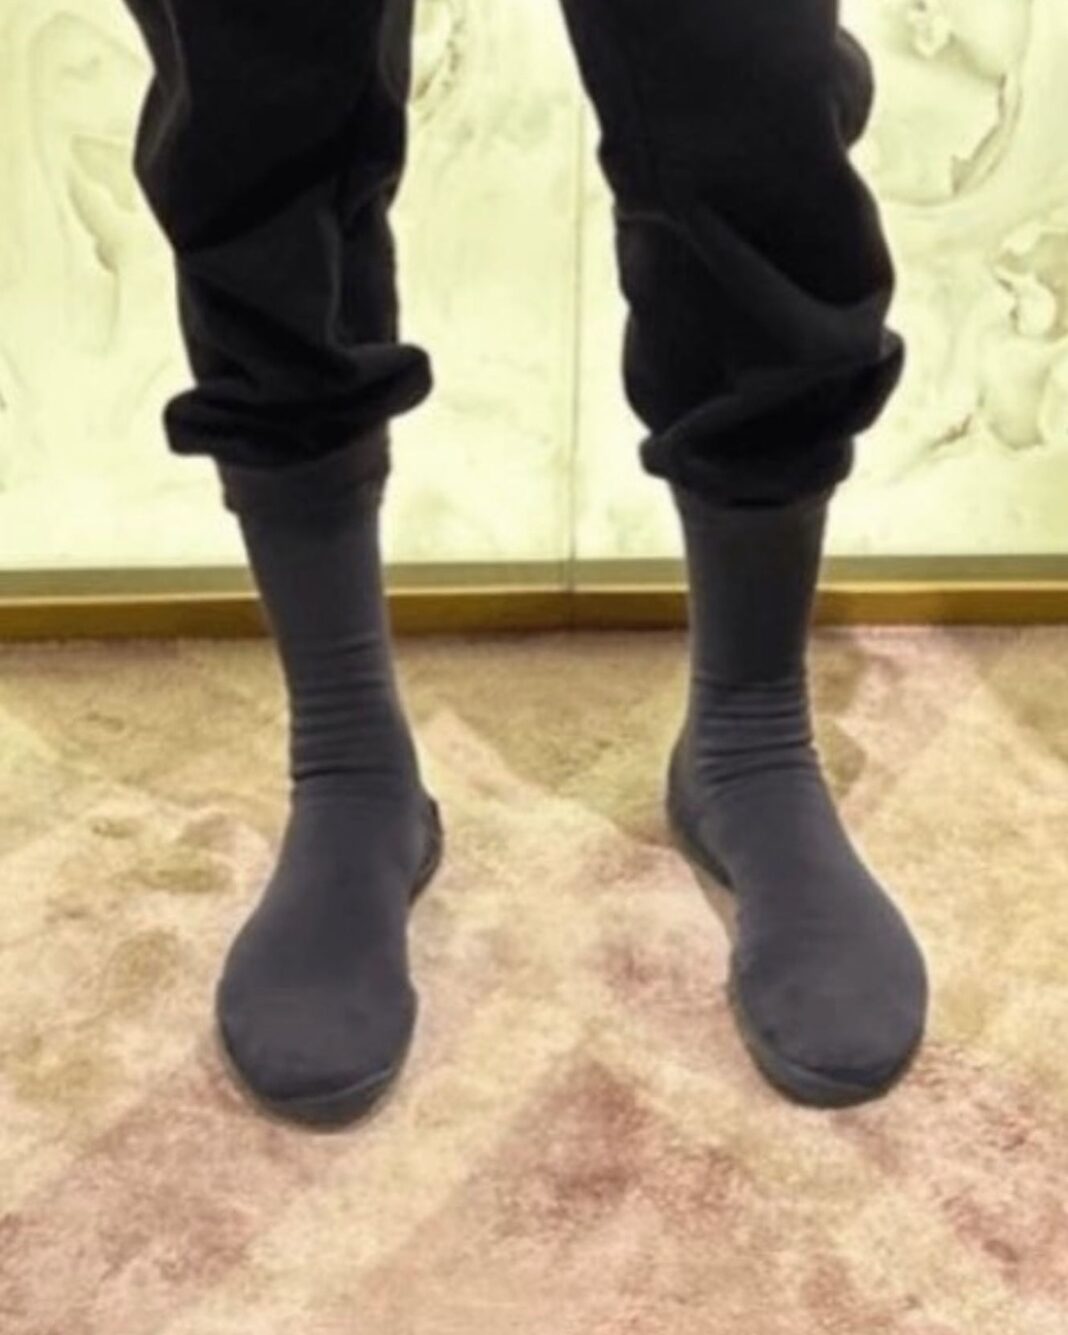 Kanye West YEEZY POD Sock Shoes 1 1068x1335 